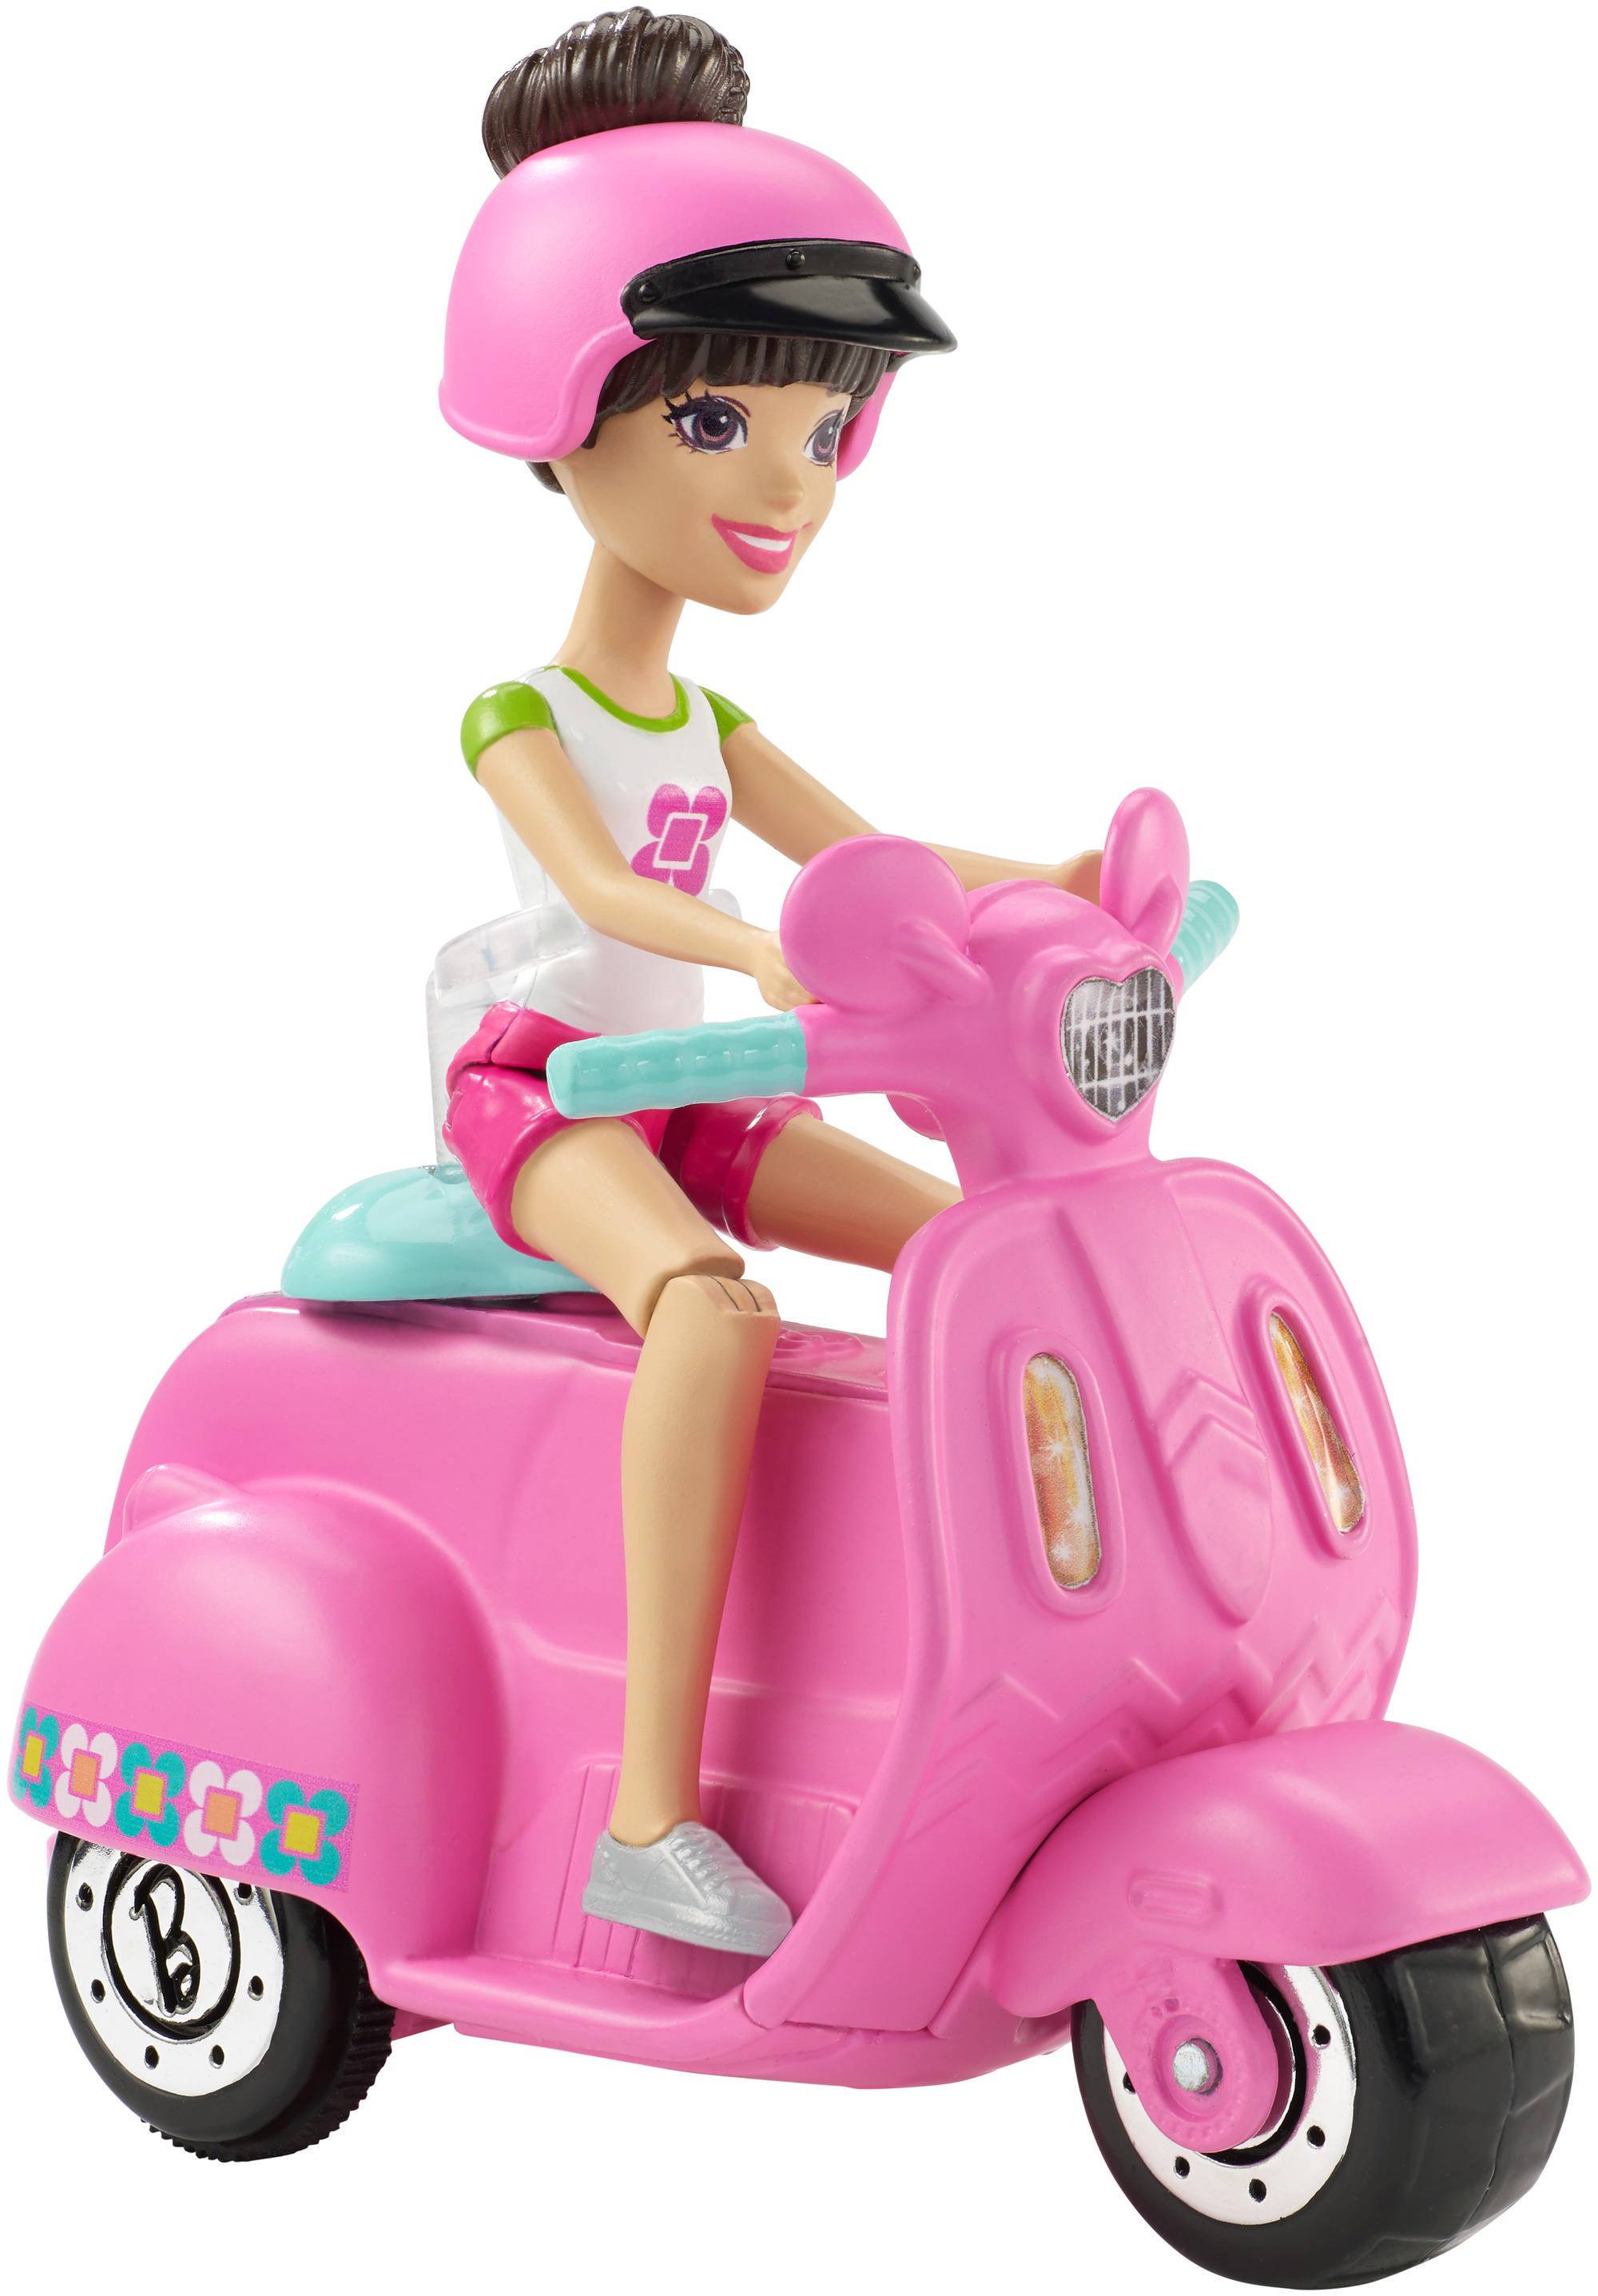 Мини куклы барби. Набор Barbie в движении мини-кукла и розовый автомобиль, 11 см, fhv77. Барби мотоцикл Барби мотоцикл. Набор игровой Барби 2 куклы и автомобиль. Игрушки для девочек 10 лет.